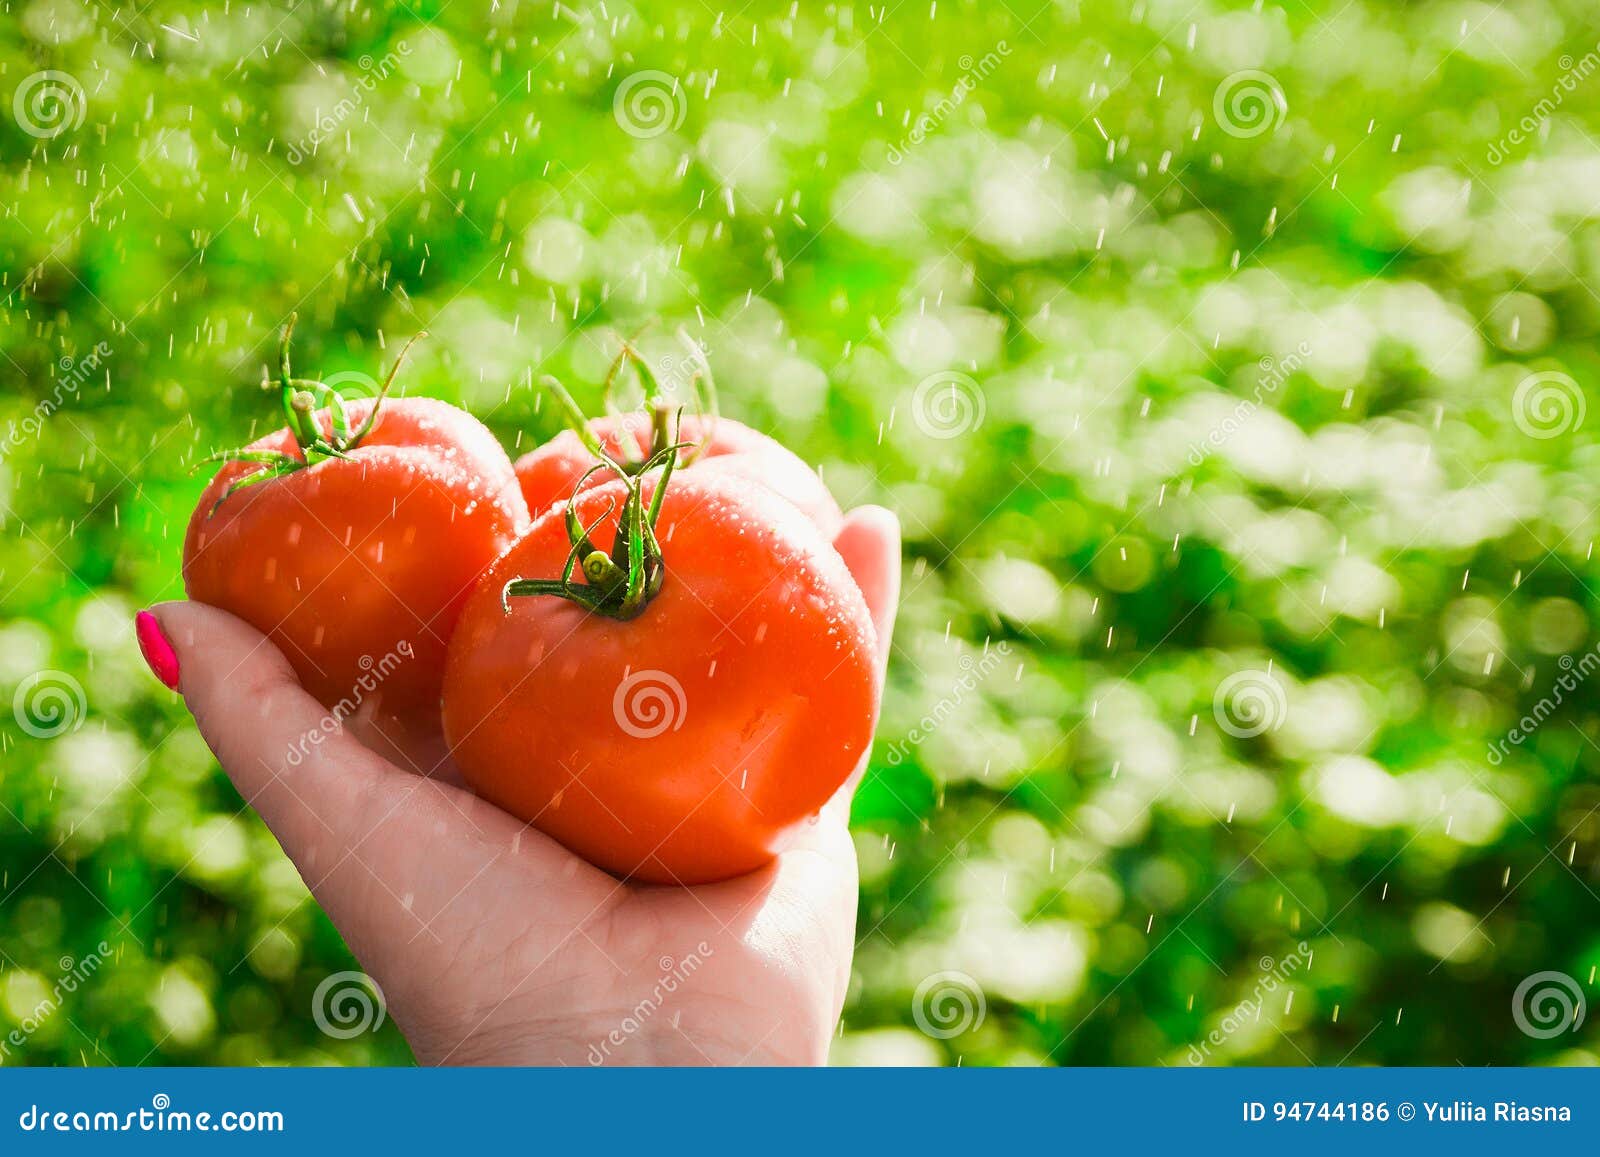 Agricoltore che tiene i pomodori freschi Pomodori della tenuta nelle mani sotto le gocce di pioggia. Agricoltore che tiene i pomodori freschi Alimento, verdure, agricoltura Pomodori della tenuta nelle mani sotto le gocce di pioggia